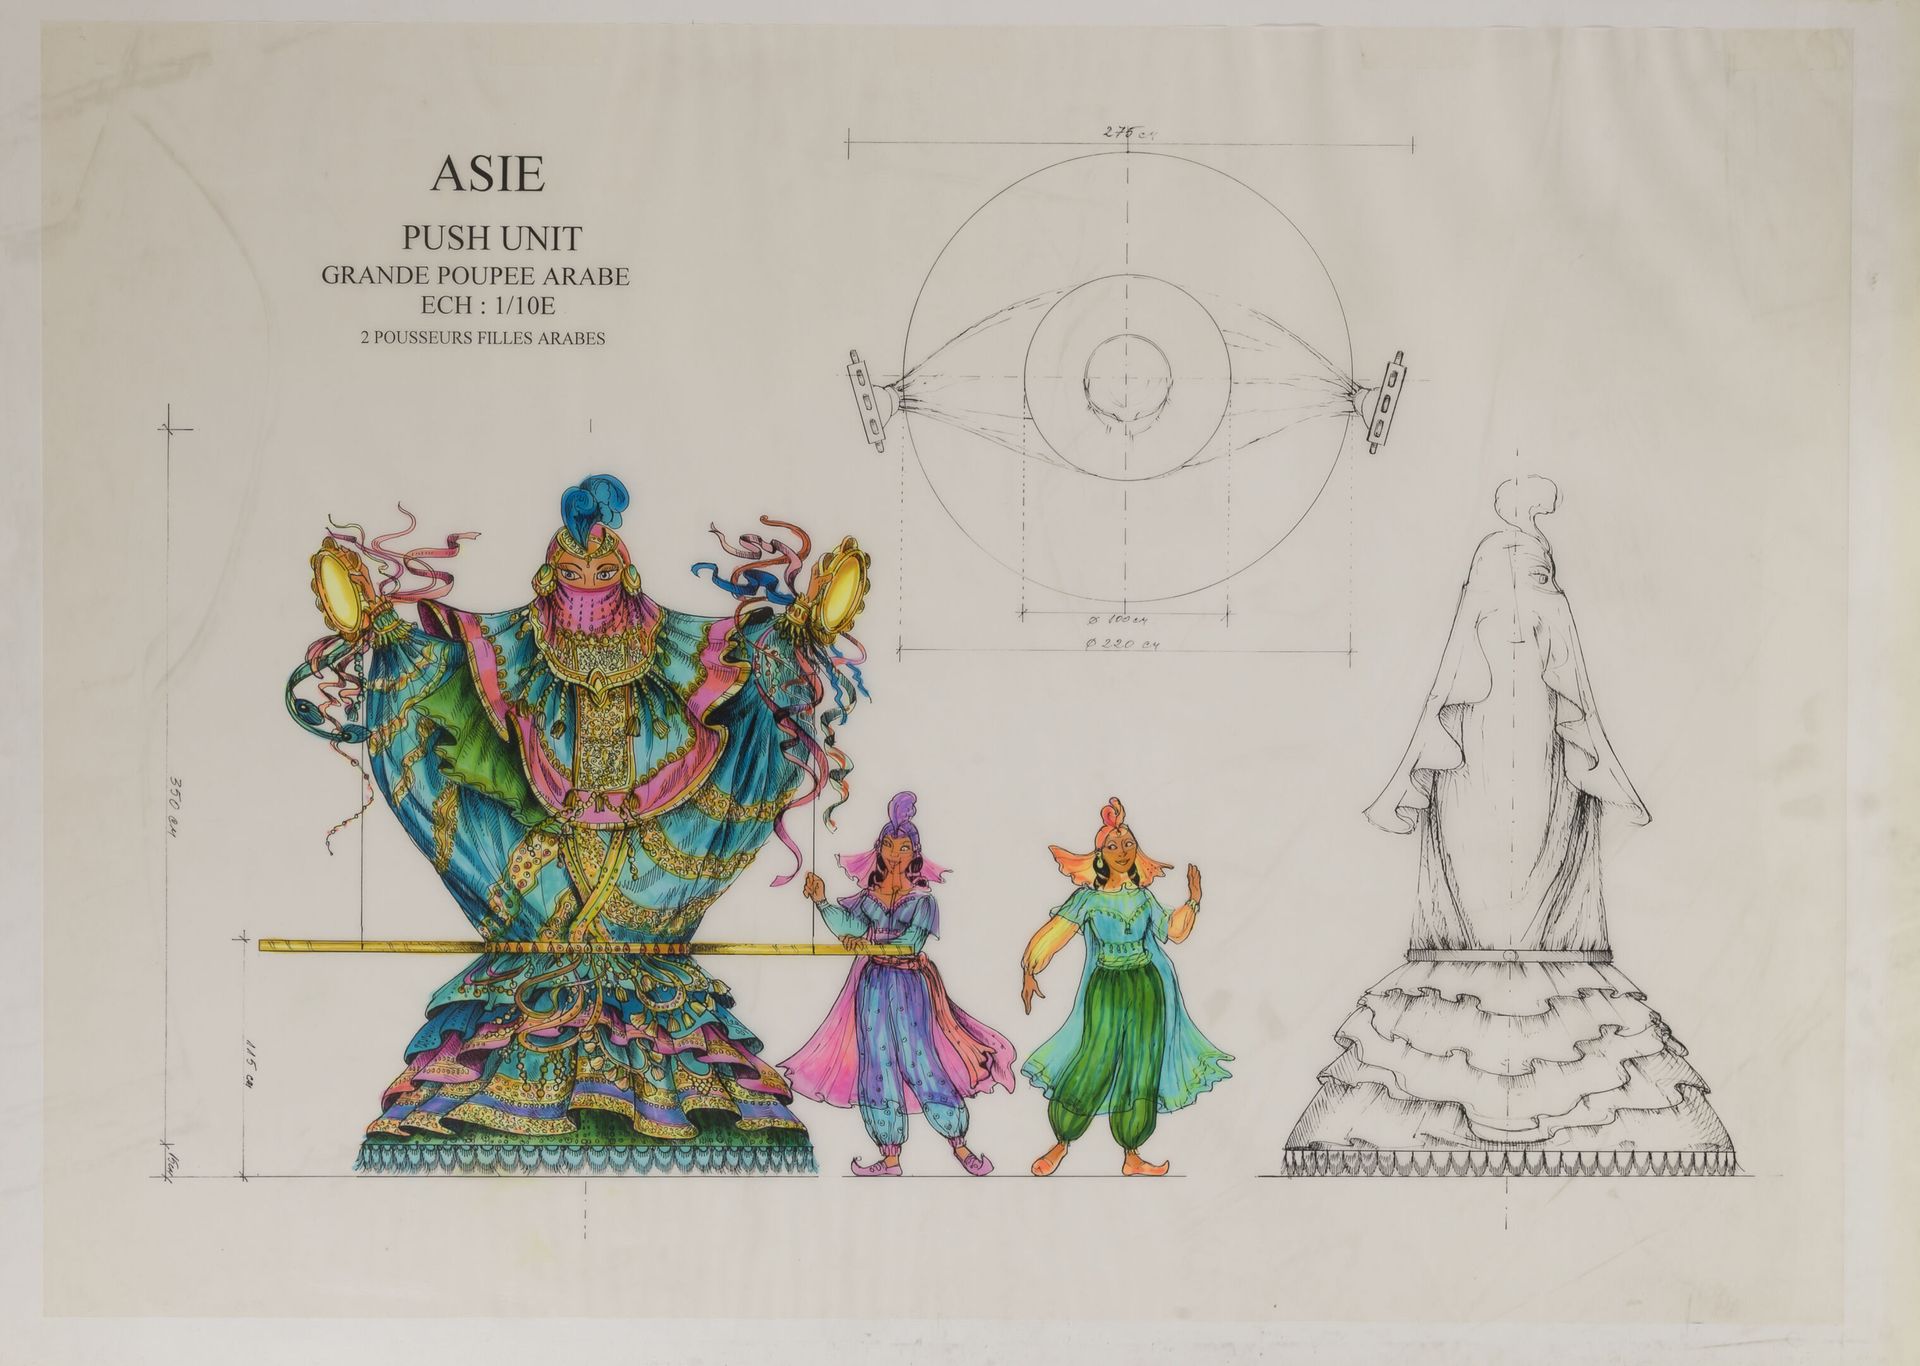 Petrika IONESCO (1946) 亚洲，推单位大型阿拉伯娃娃。

巴黎迪斯尼乐园的项目。

墨水和毛笔在印有背景的描图纸上（粘在纸板上面）。

无符&hellip;